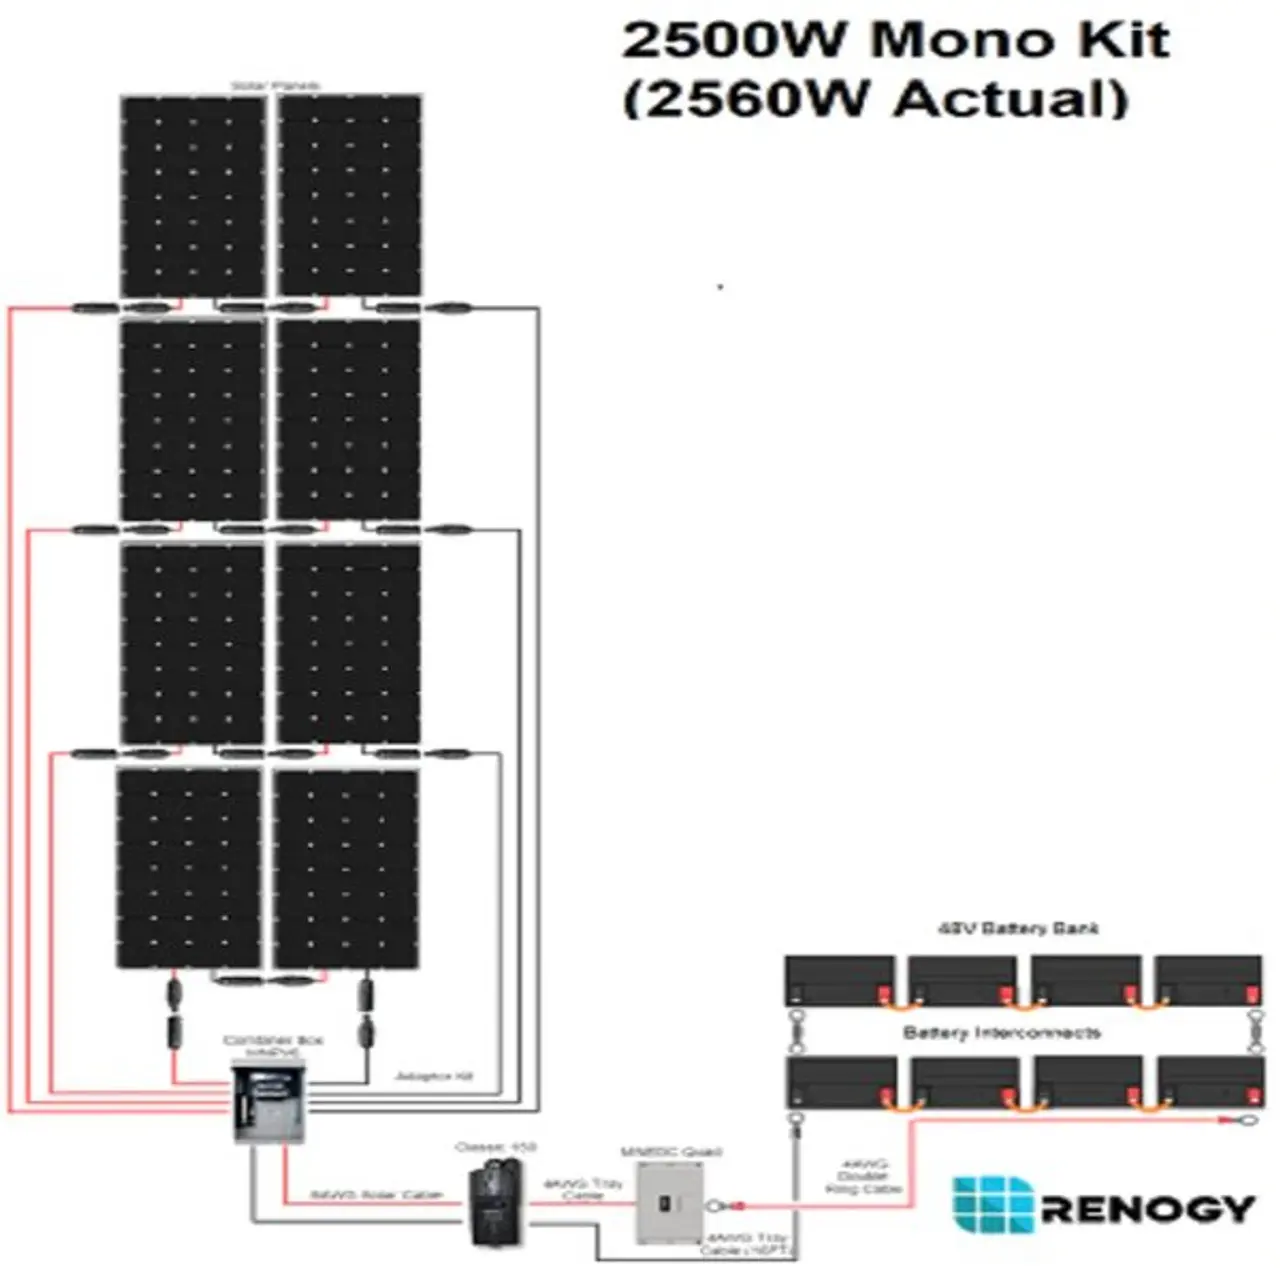 48 volt solar panel specifications - Do 48V solar panels exist